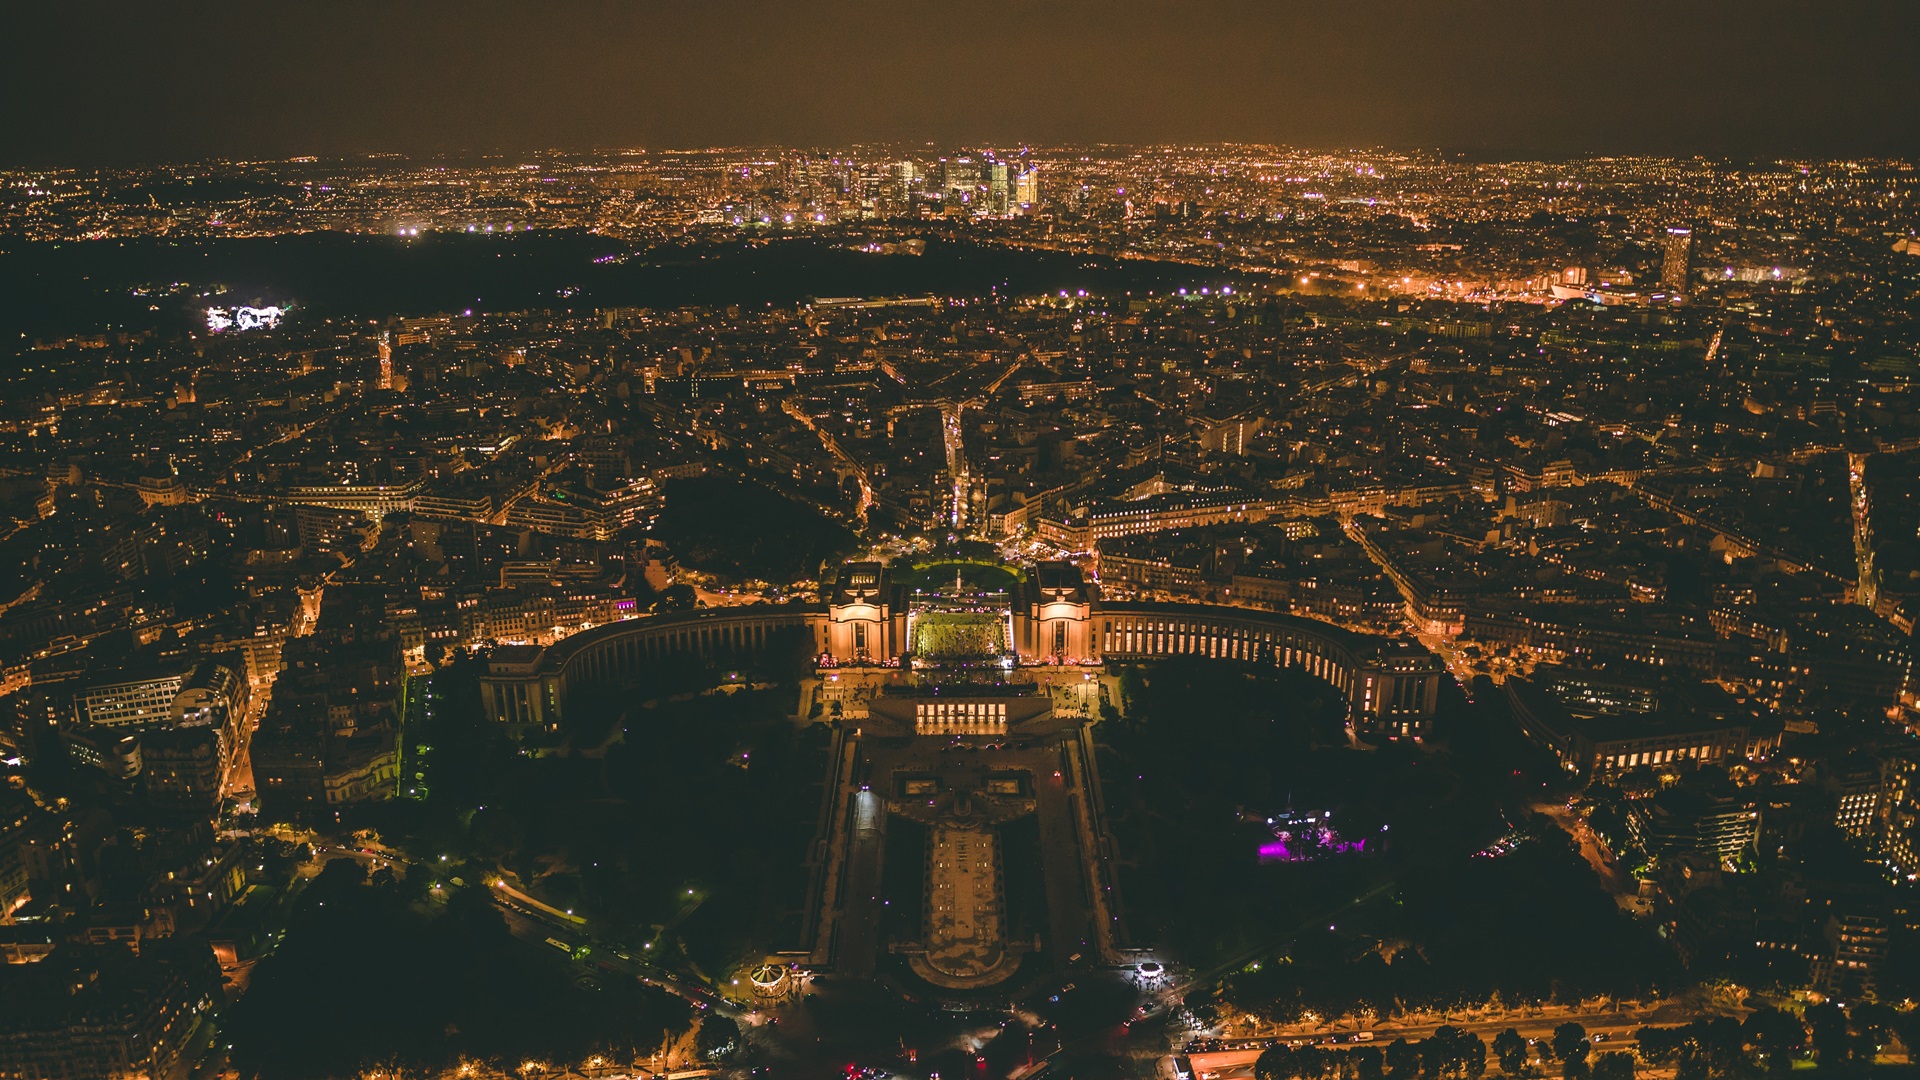 General 1920x1080 cityscape landscape city night urban aerial view Paris palace city lights Palais de Chaillot